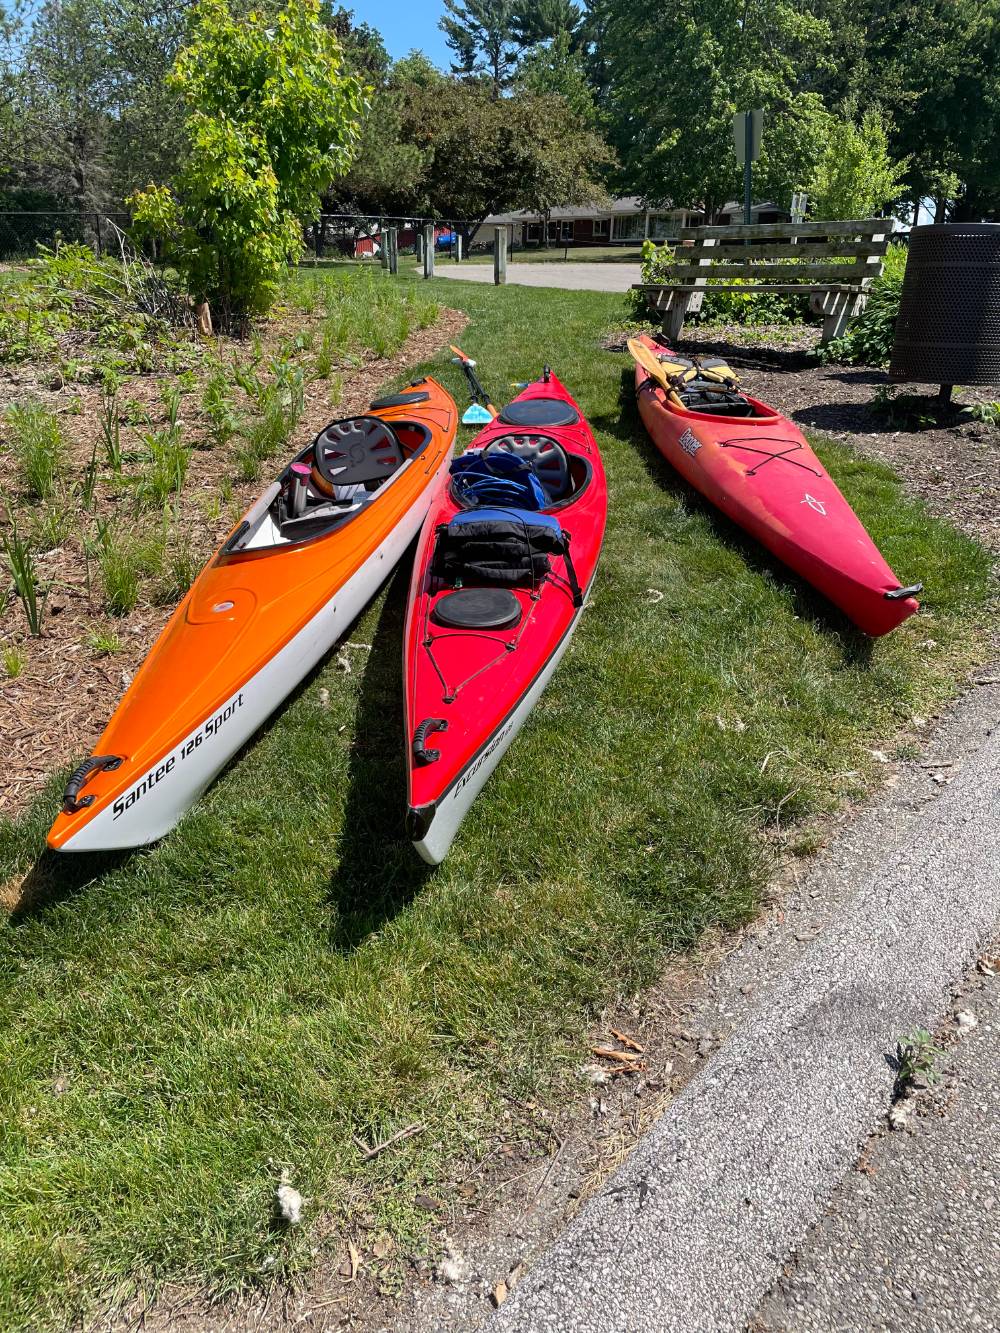 three kayaks on grass